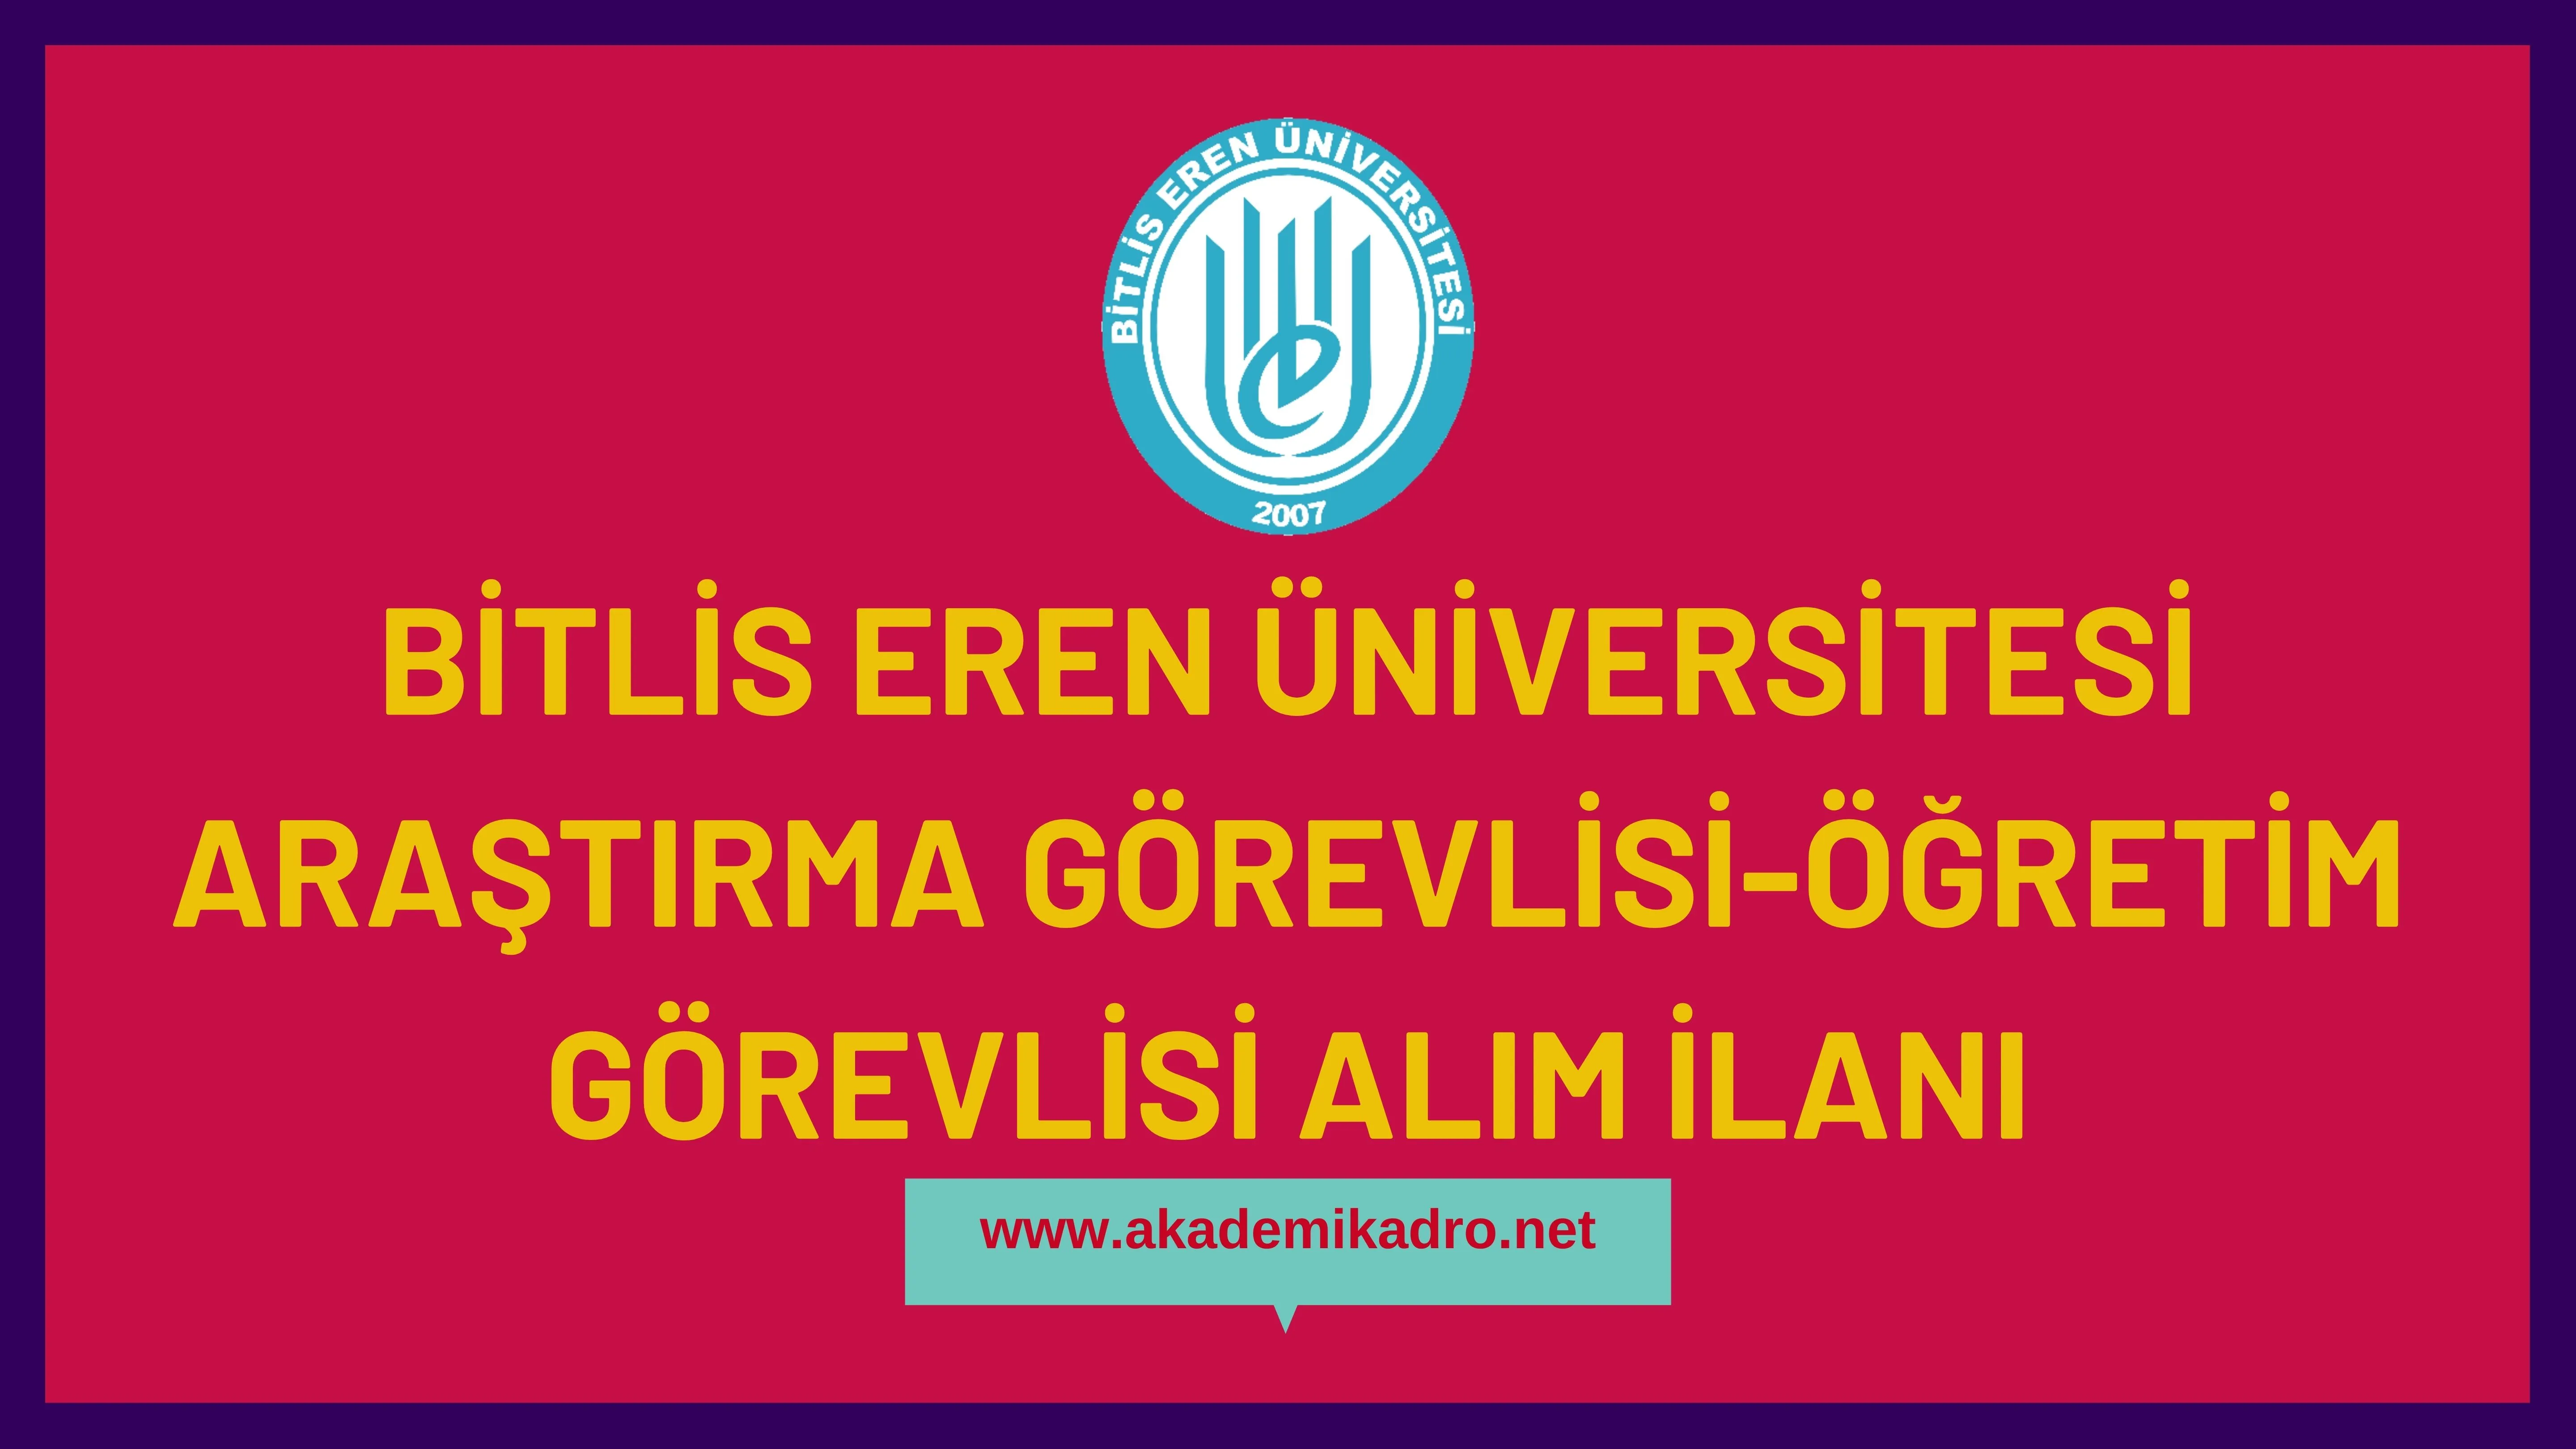 Bitlis Eren Üniversitesi 4 Öğretim Görevlisi ve Araştırma görevlisi alacaktır. Son başvuru tarihi 23 Aralık 2022